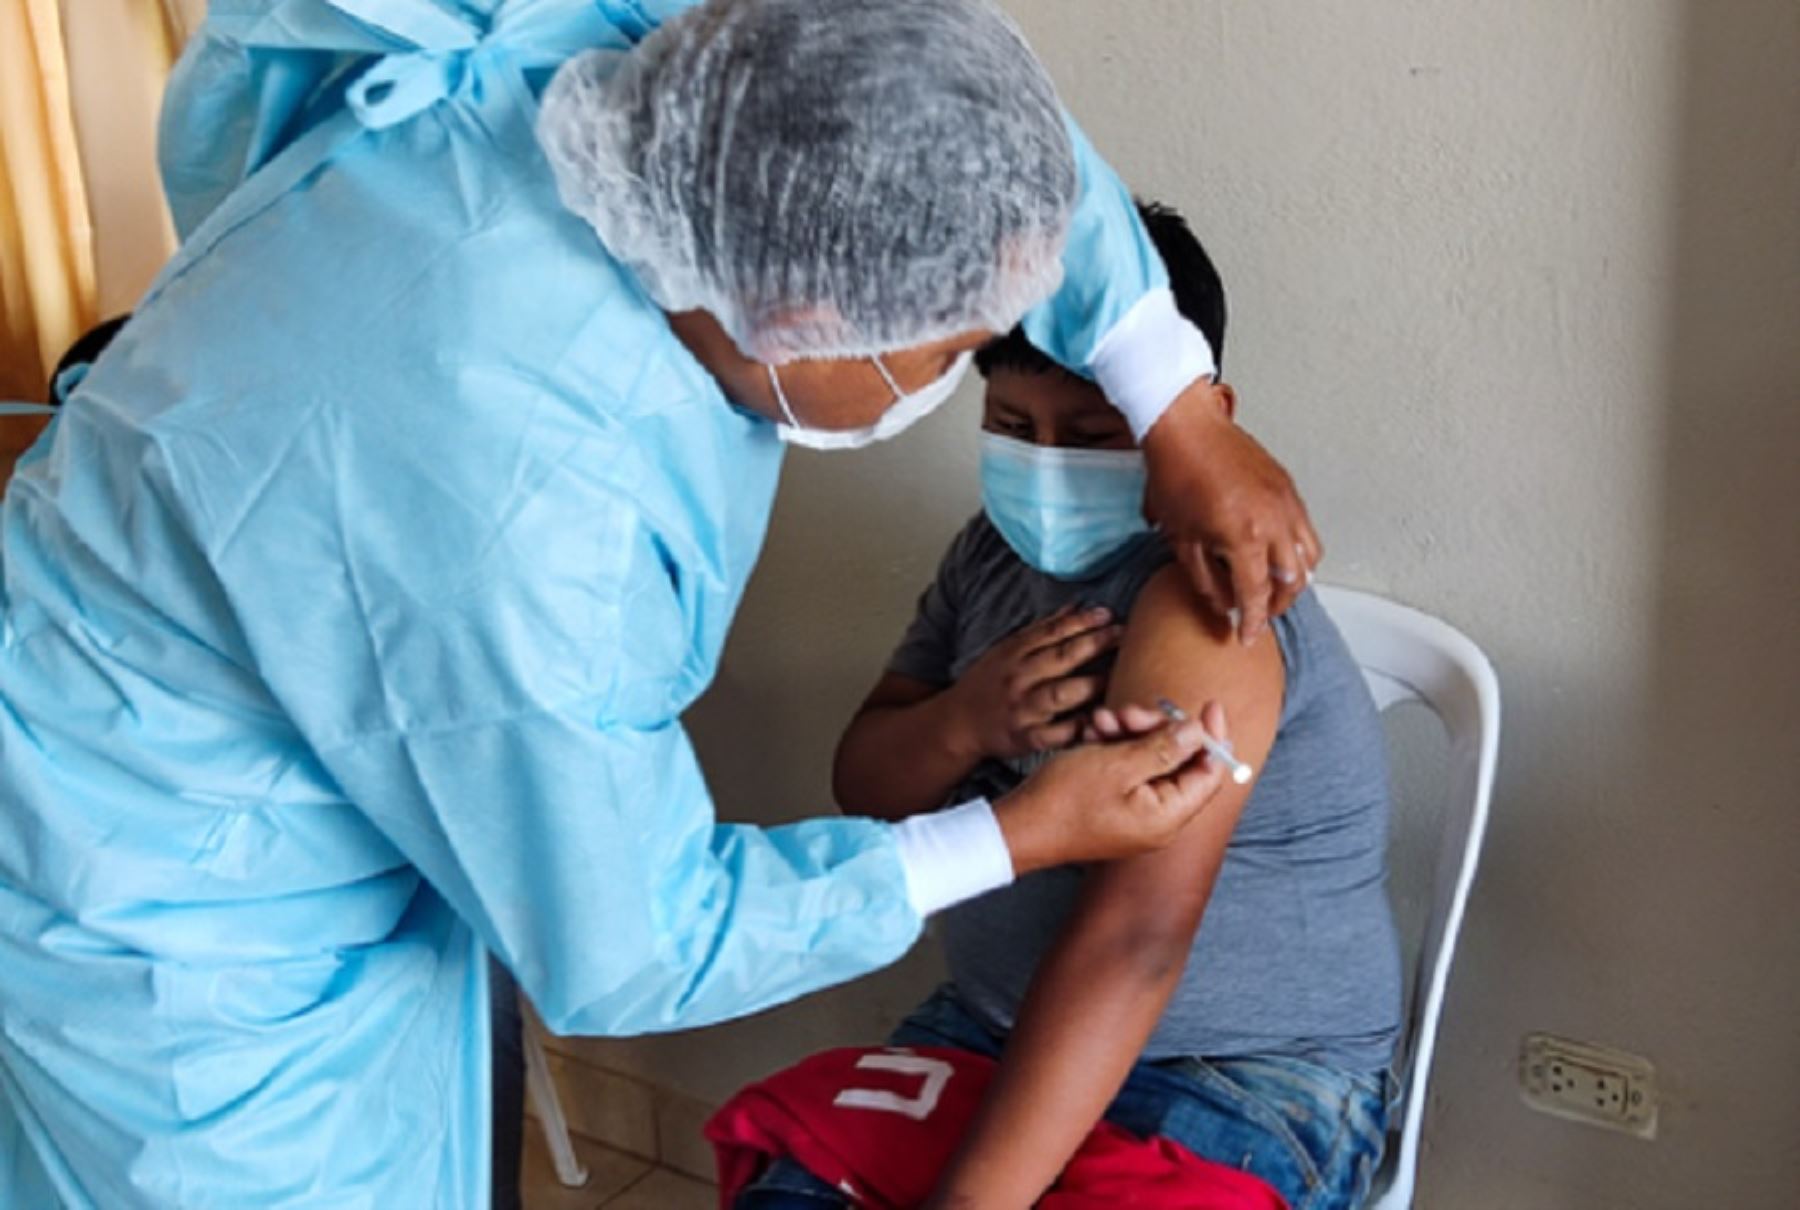 Desde tempranas horas, personal médico llegó desde la microrred de salud Huaripampa y el puesto de salud Santa Cruz hasta el tambo, para colocar la tercera dosis de la vacuna contra el nuevo coronavirus a menores de edad de Tzactza, Mirasanta, Anquiuran, Pariamarca, Yungaypampa, Anacpampa y Rayanpampa, comunidades ubicadas por encima de los 3,000 m s.n.m.